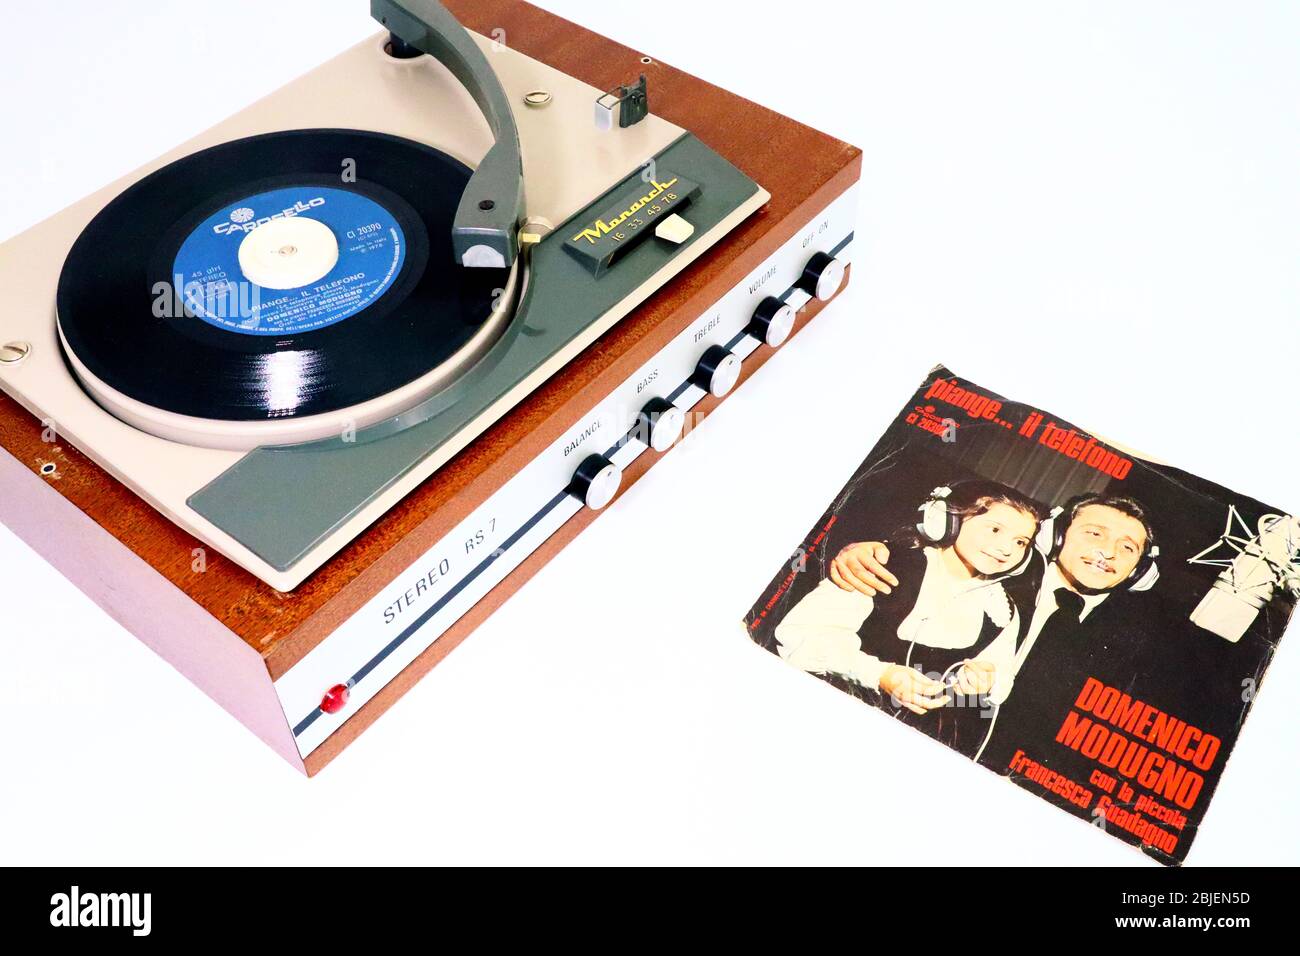 DOMENICO MODUGNO mit FRANCESCA GUADAGNO, Piange... il Telefono, 1975 Vinyl Record CAROSELLO/RICORDI Label auf 1966 MONARCH Record Player Stockfoto